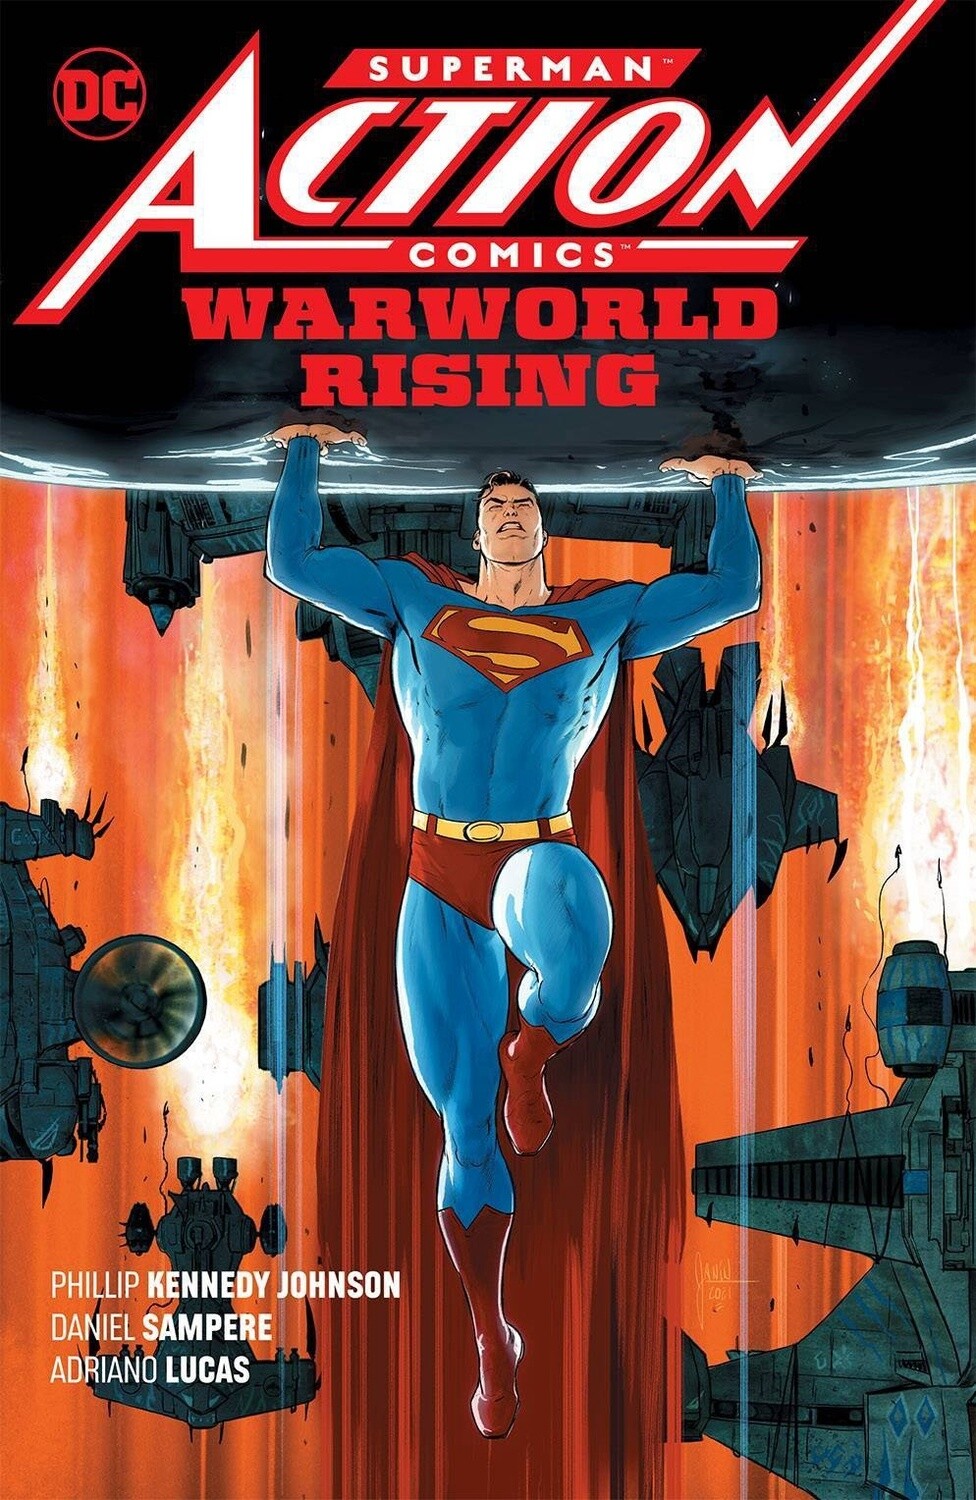 Superman Action Comics Vol. 1: Warworld Rising